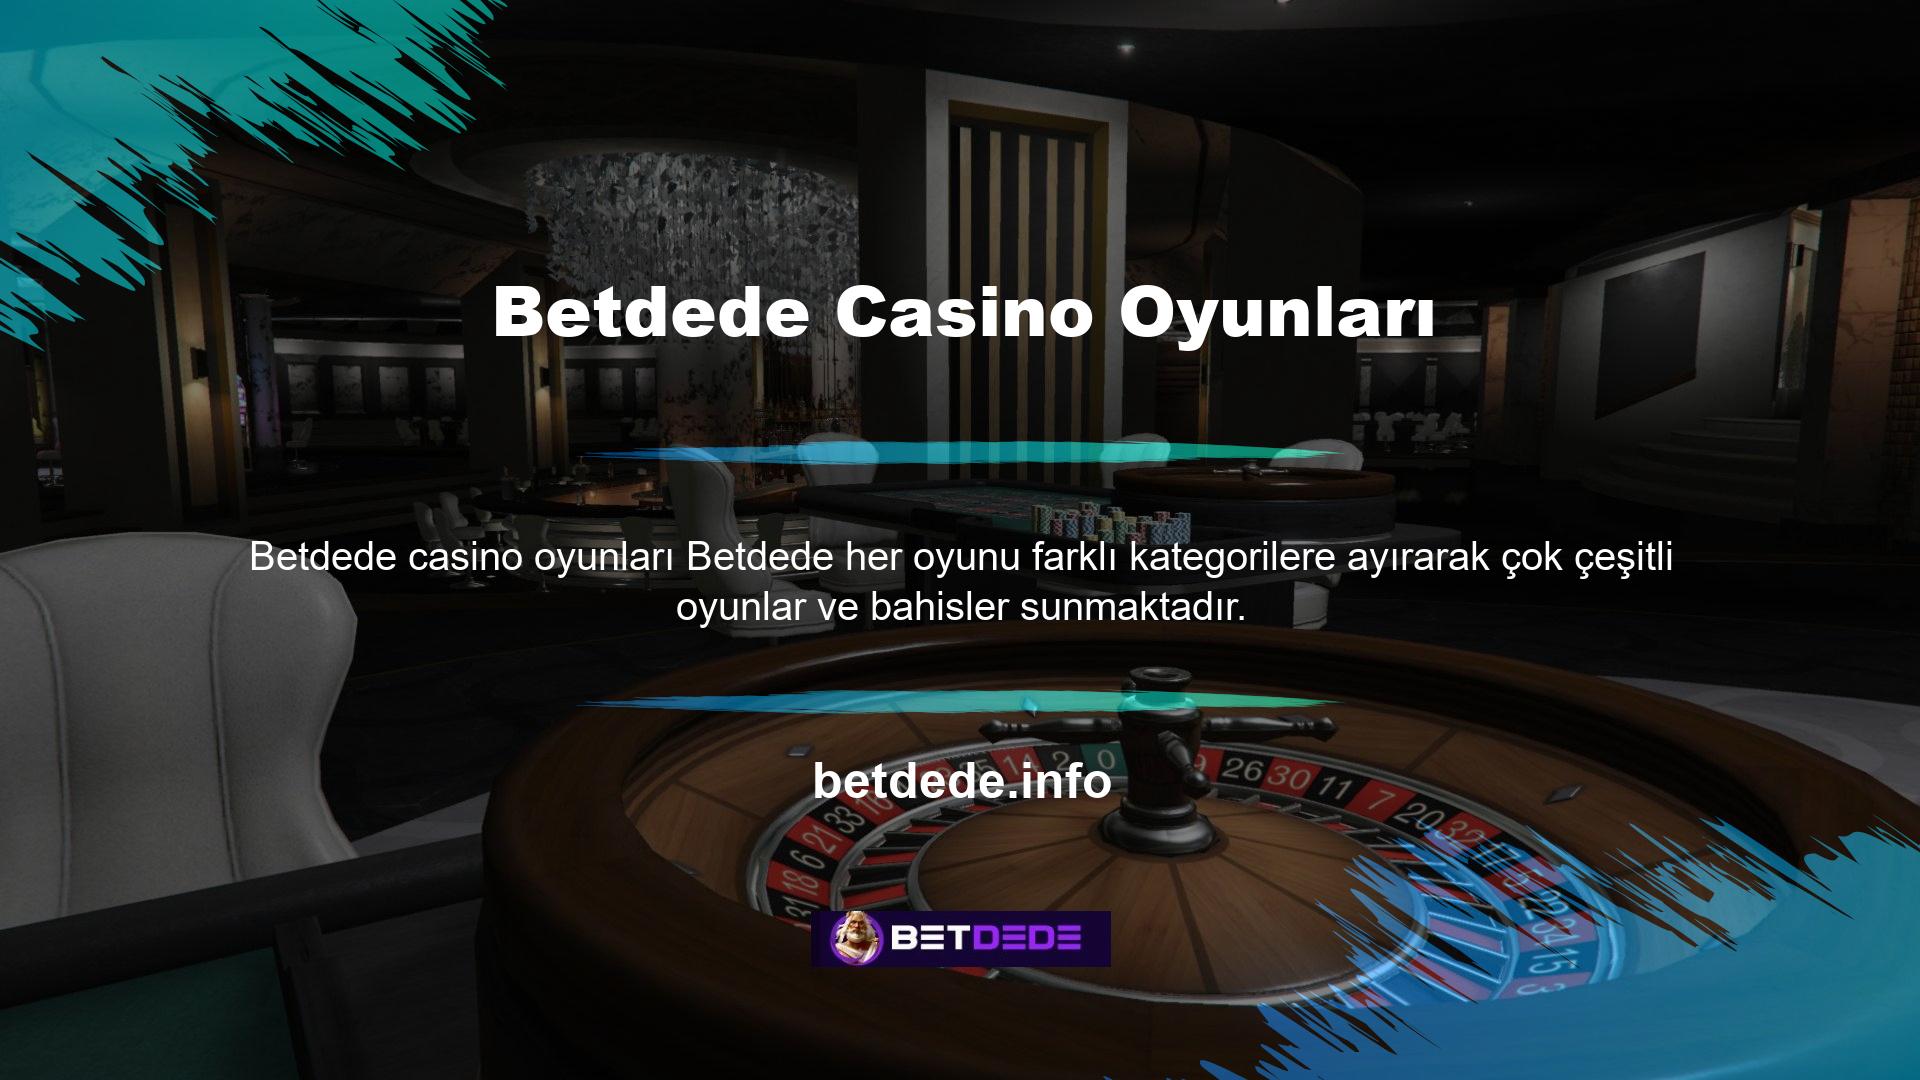 Klasik casino oyunları tercih edilir ve çoğu slot makinesi gösterilir